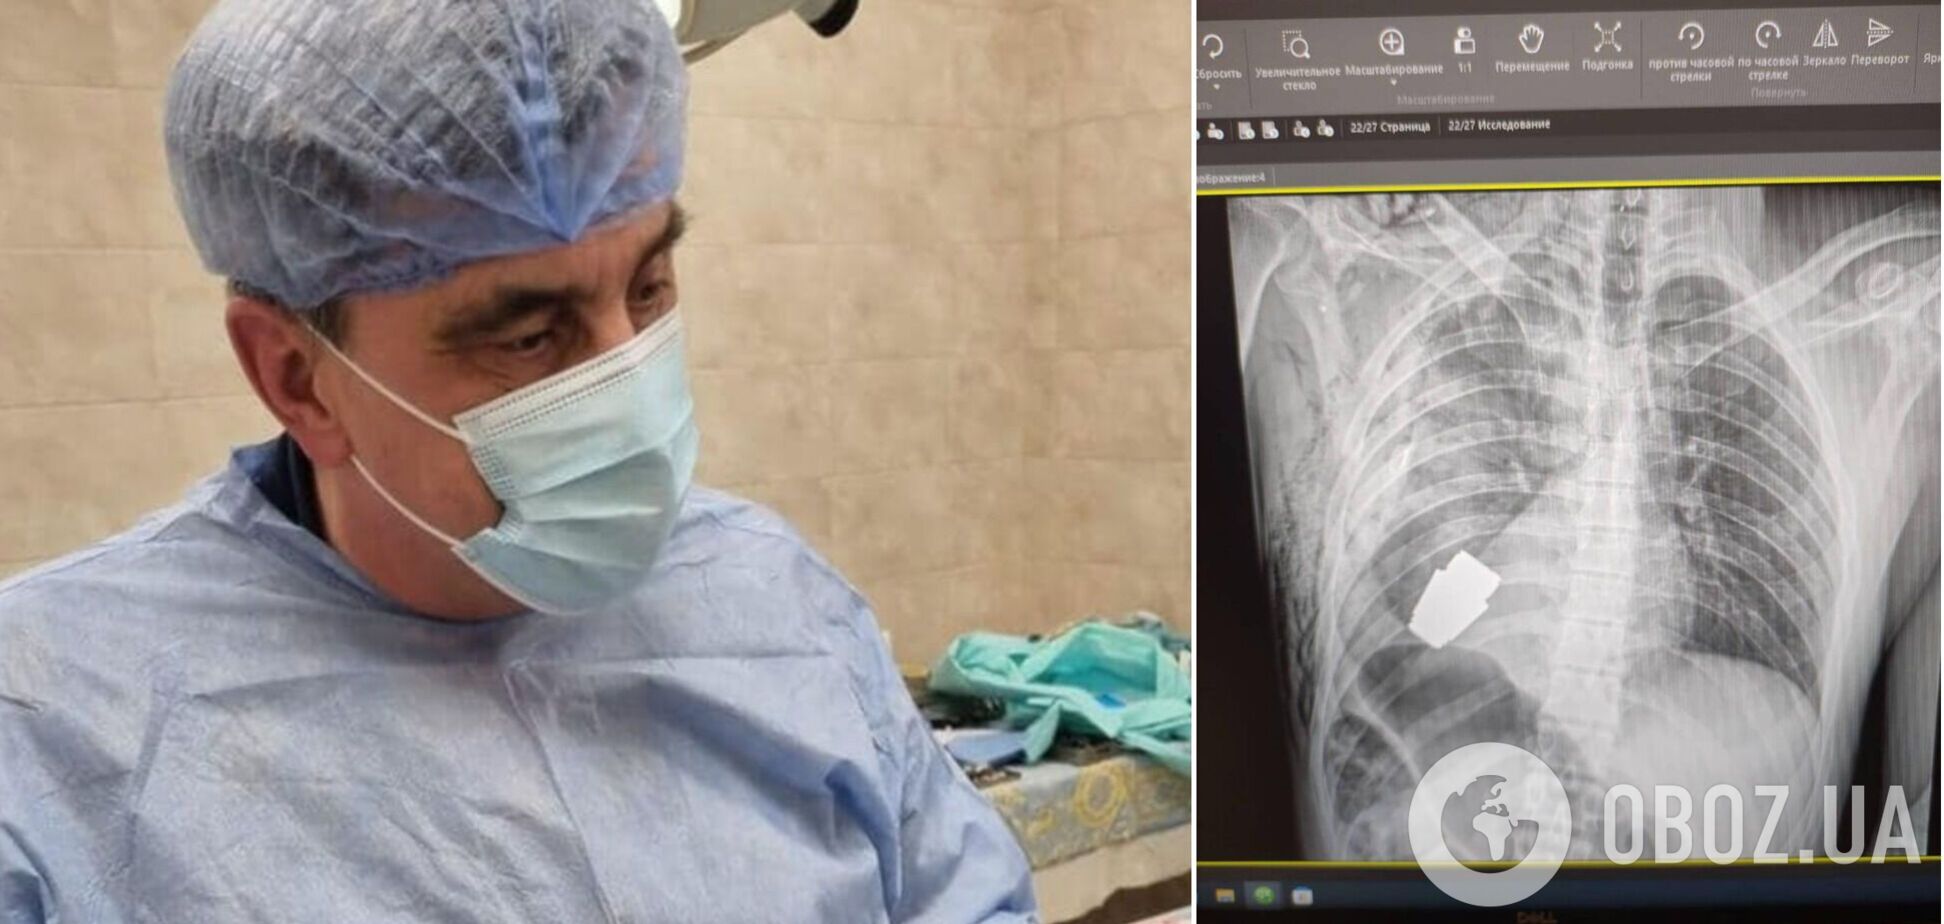 Украинские хирурги провели уникальную операцию и достали из тела военнослужащего неразорвавшуюся гранату ВОГ. Фото